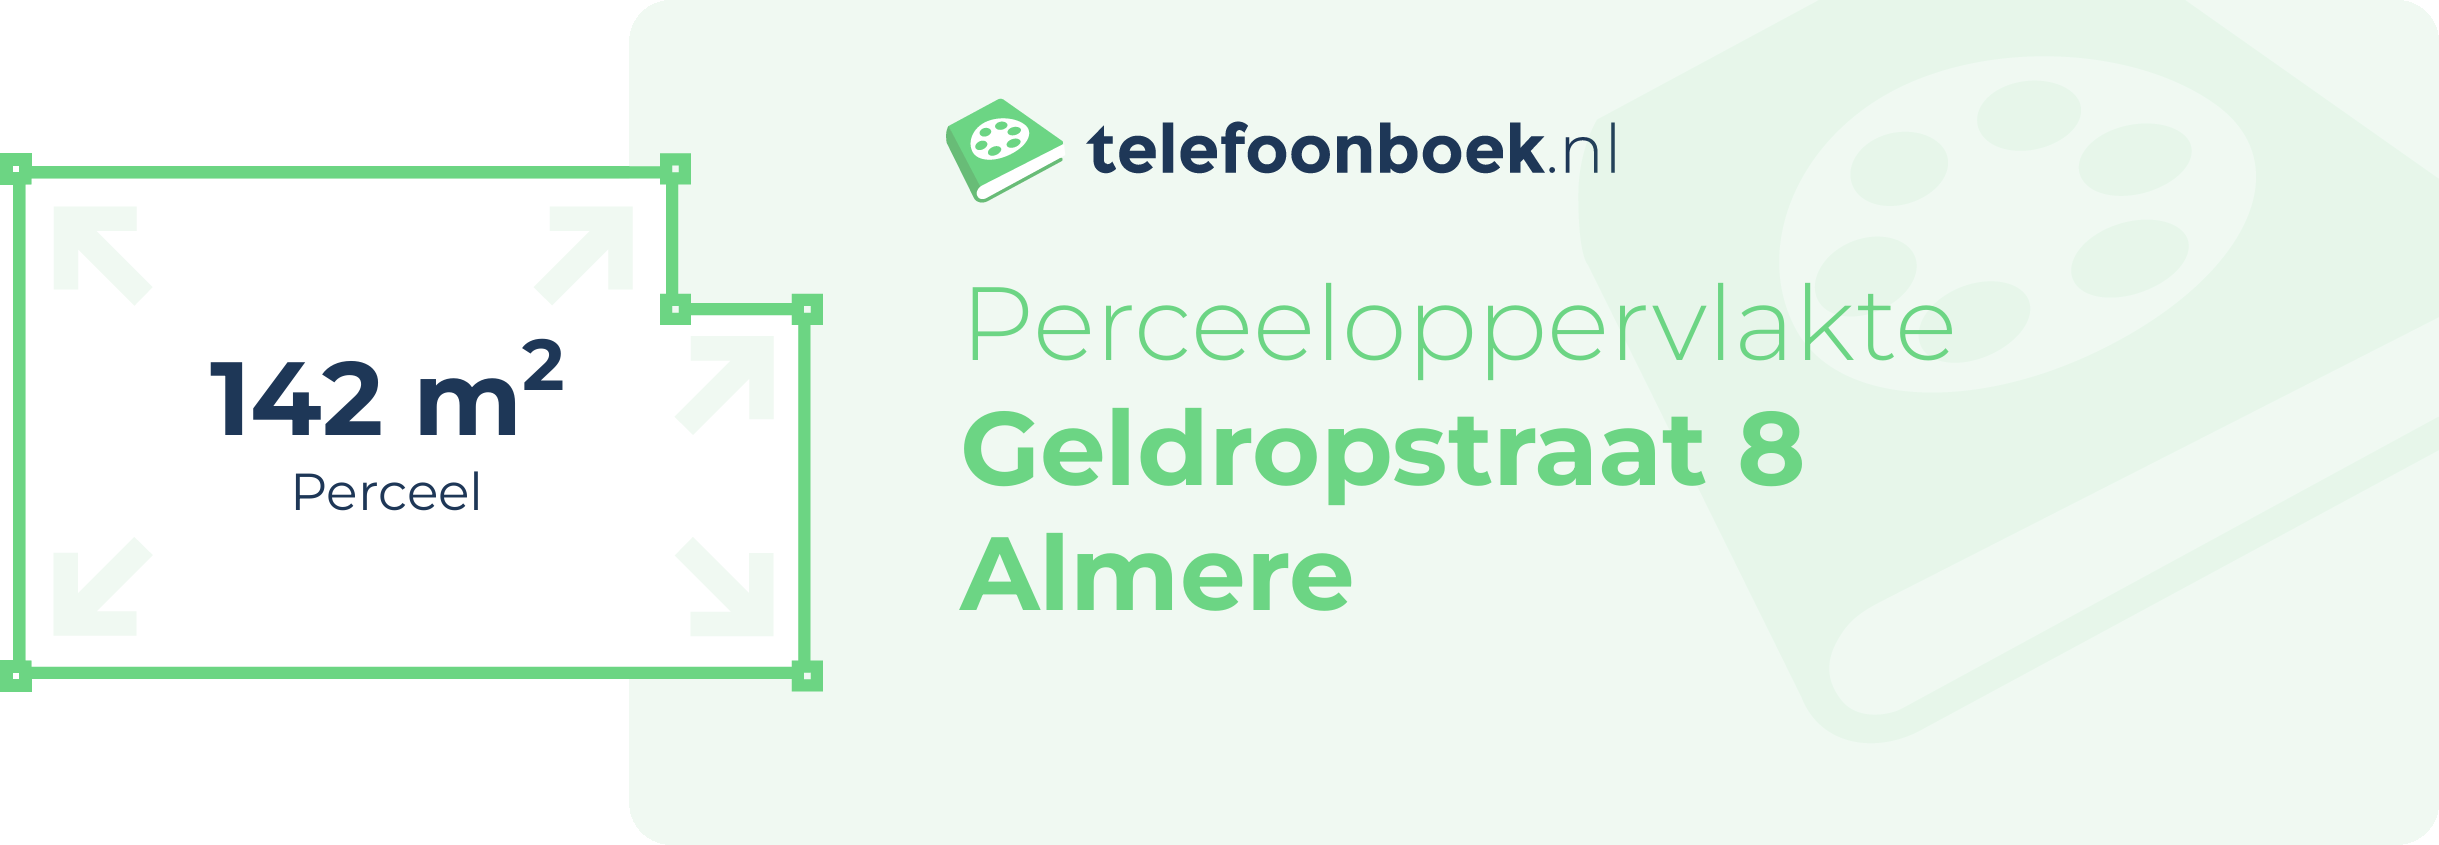 Perceeloppervlakte Geldropstraat 8 Almere